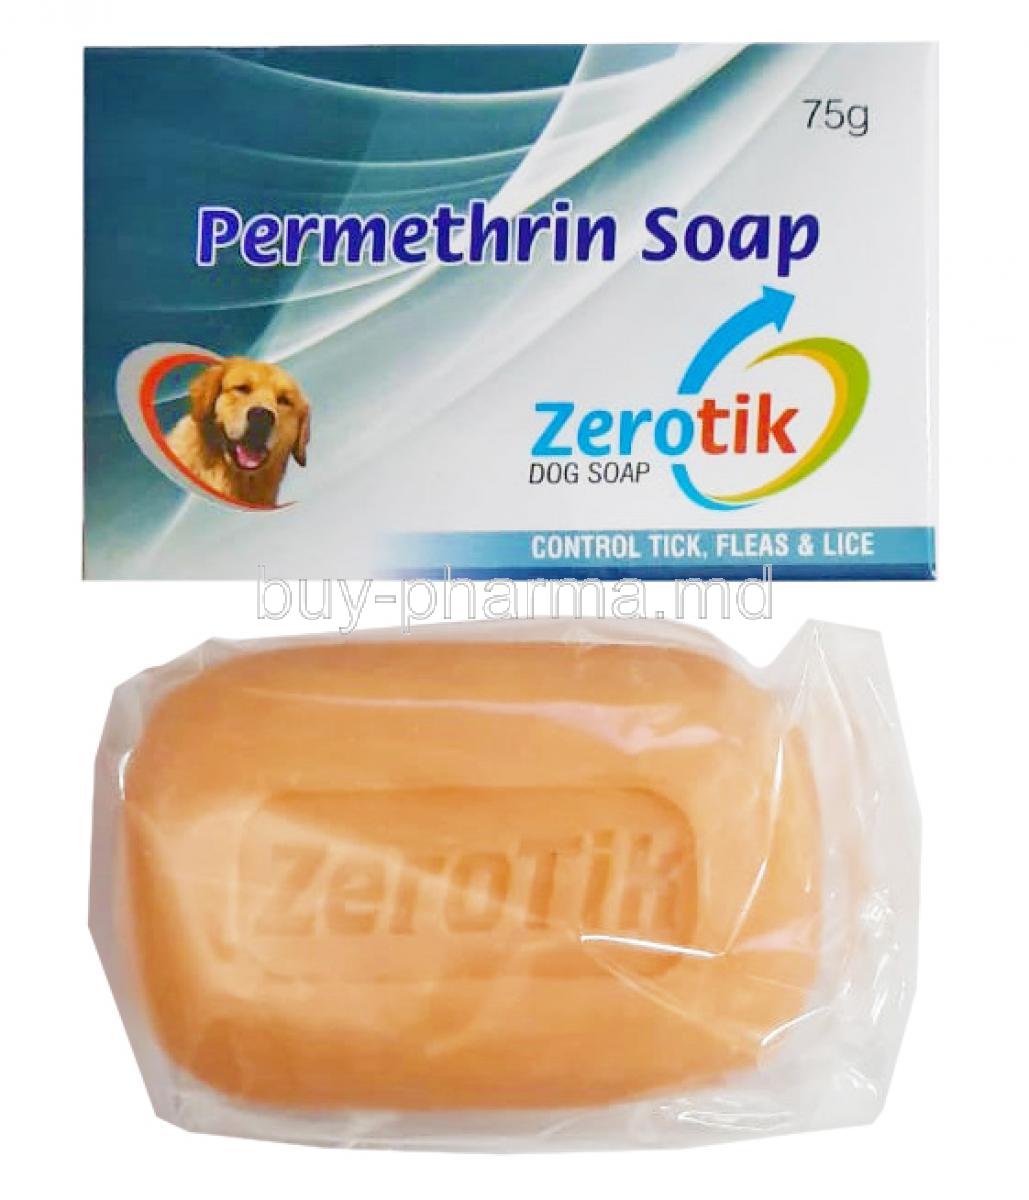 Zerotik Soap, Permethrin  75g box and soap